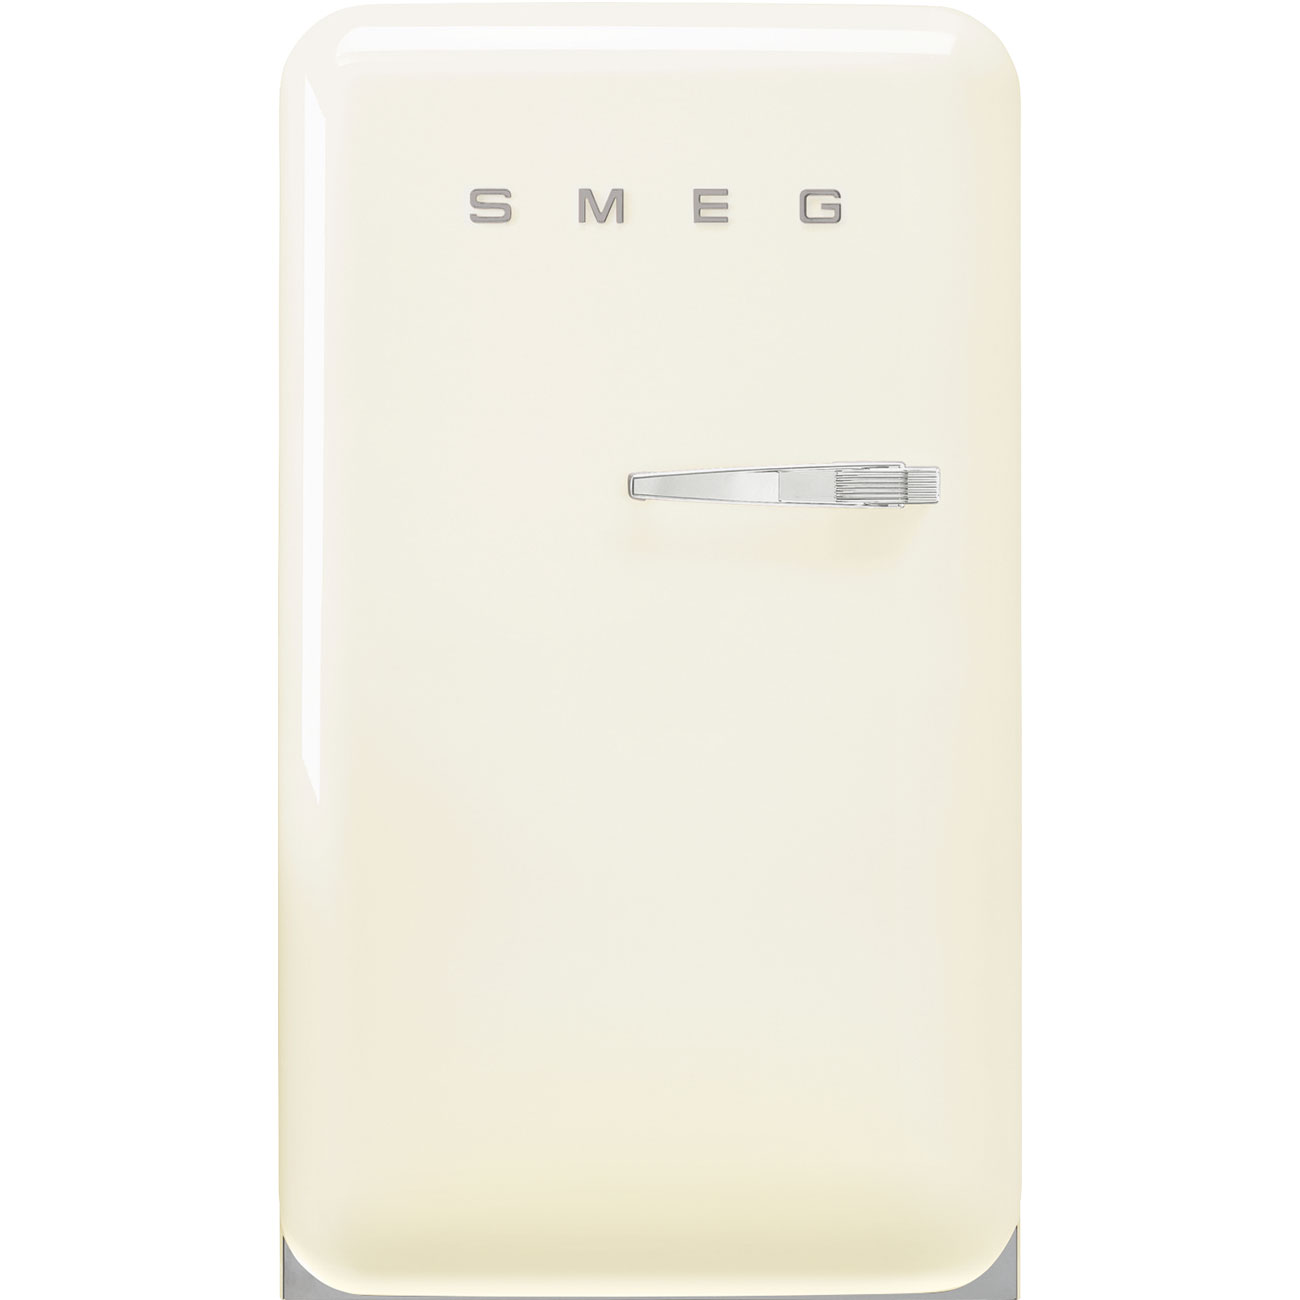 Cream refrigerator - Smeg_1